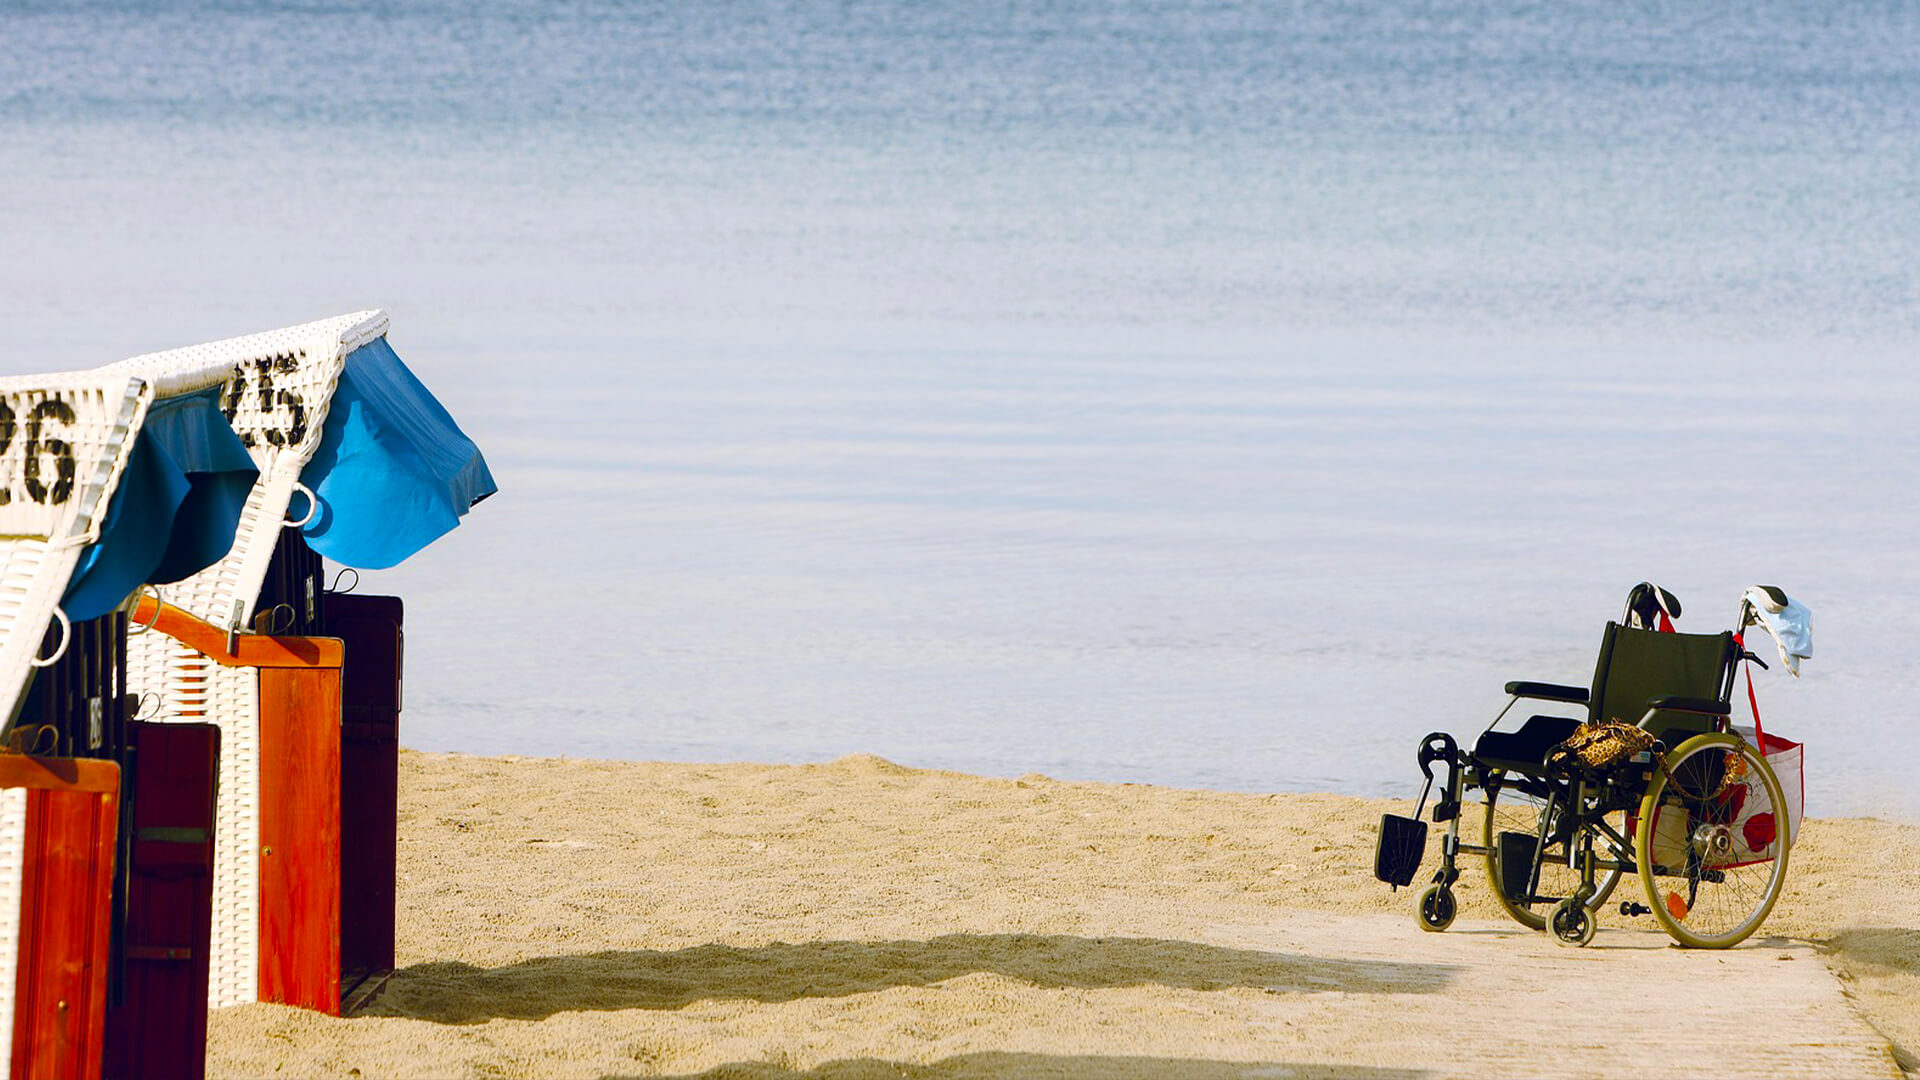 Blick auf einen Strand mit Strandkorb und einem Rollstuhl im Sand.